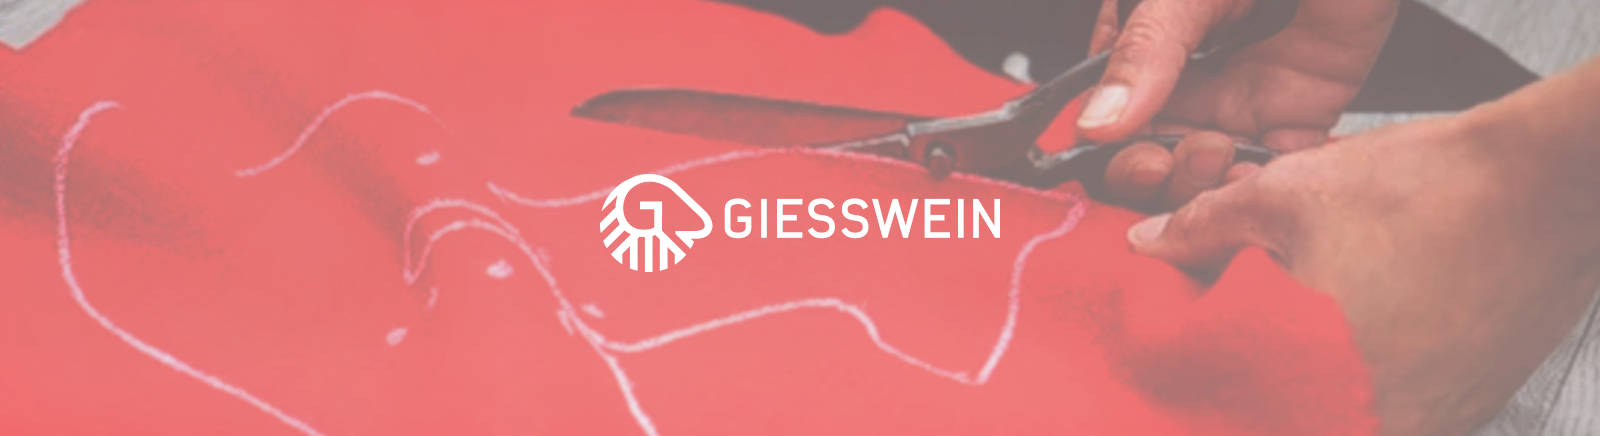 Giesswein Markenschuhe online entdecken im Juppen Schuhe Shop